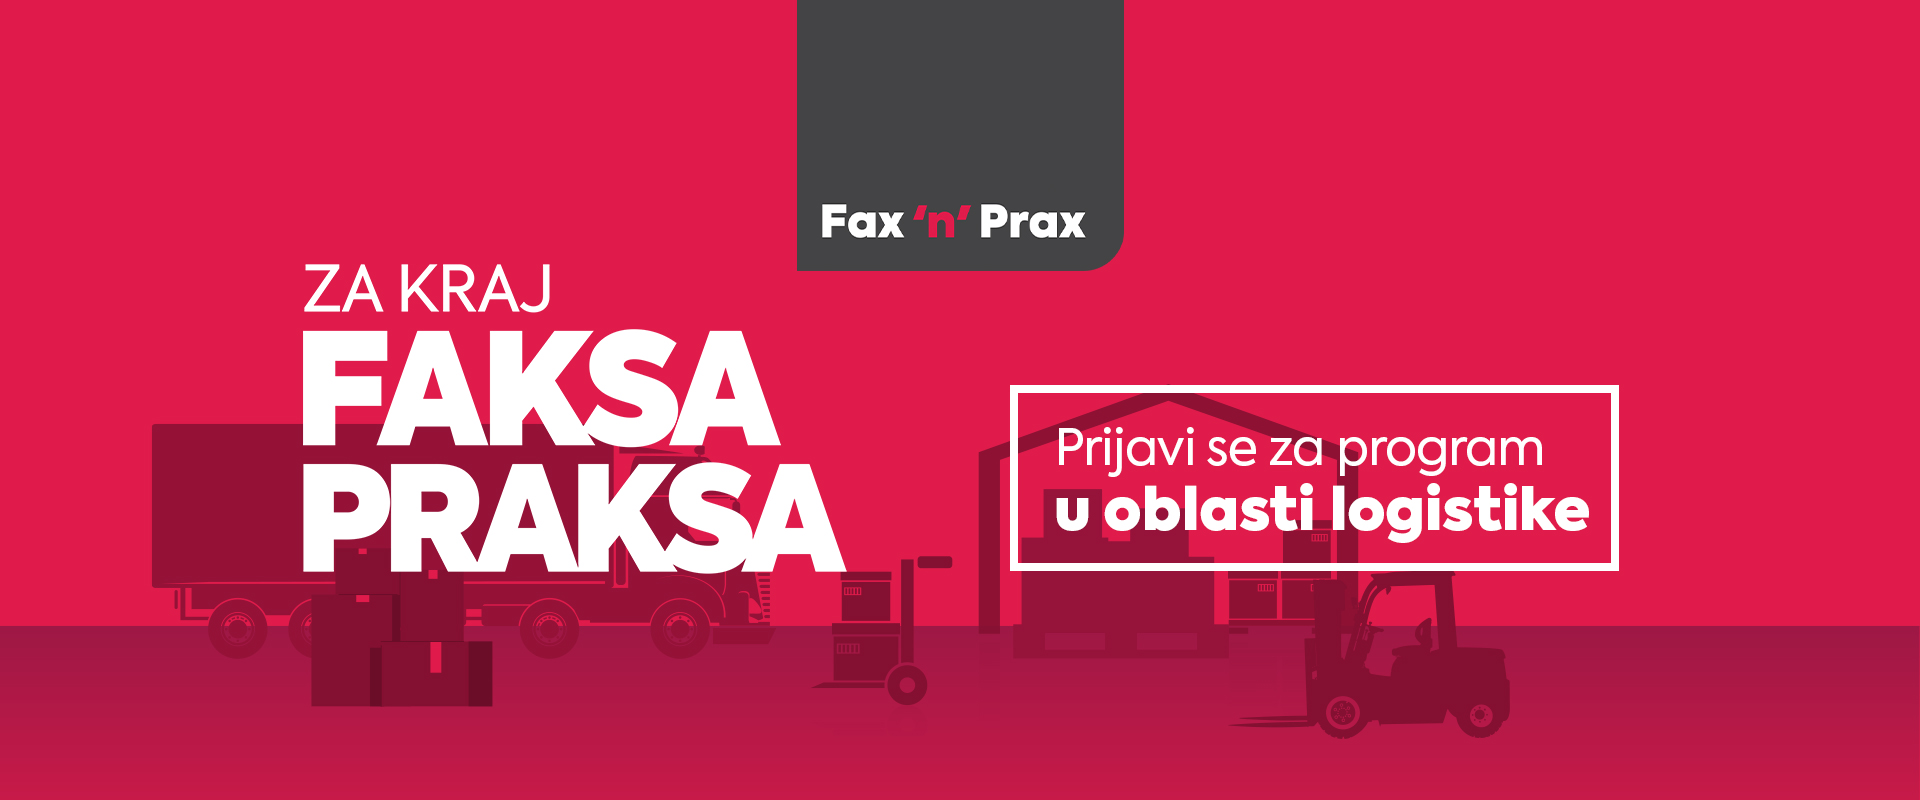 Fax ’n’ prax